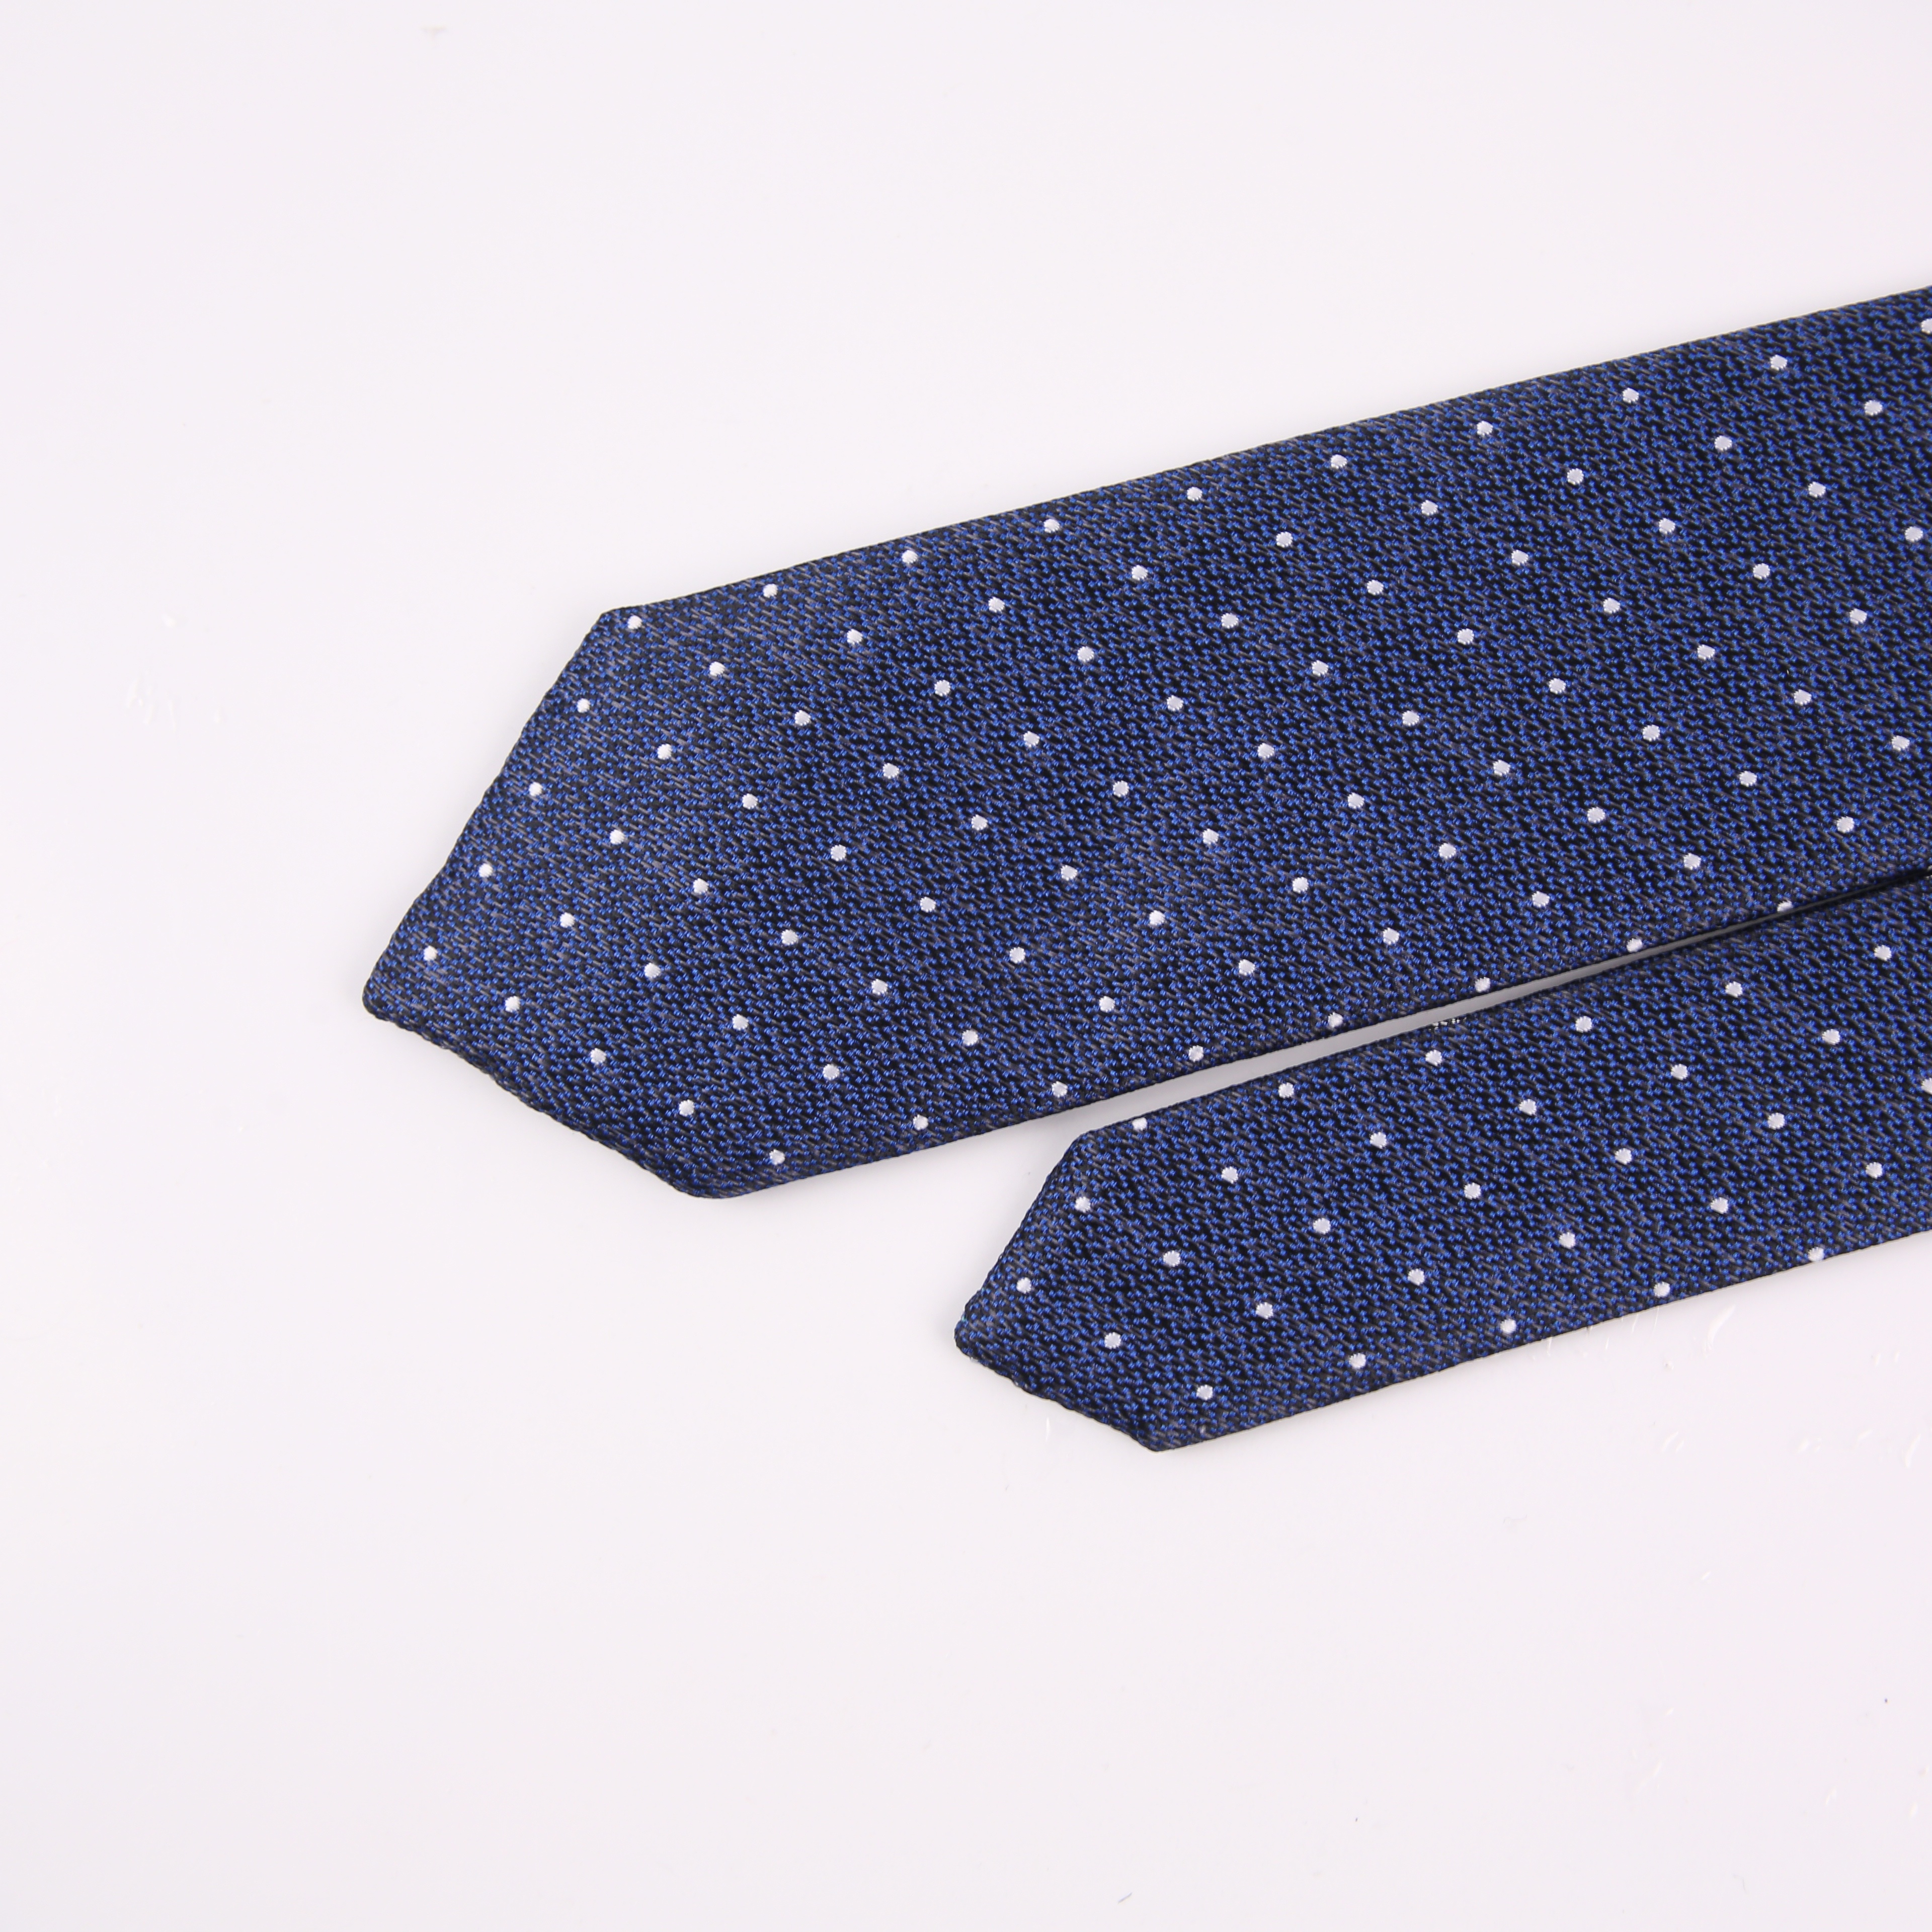 厂家直供 职业正装 双面领带服饰穿搭配件商务时尚衬衫男士领带详情12